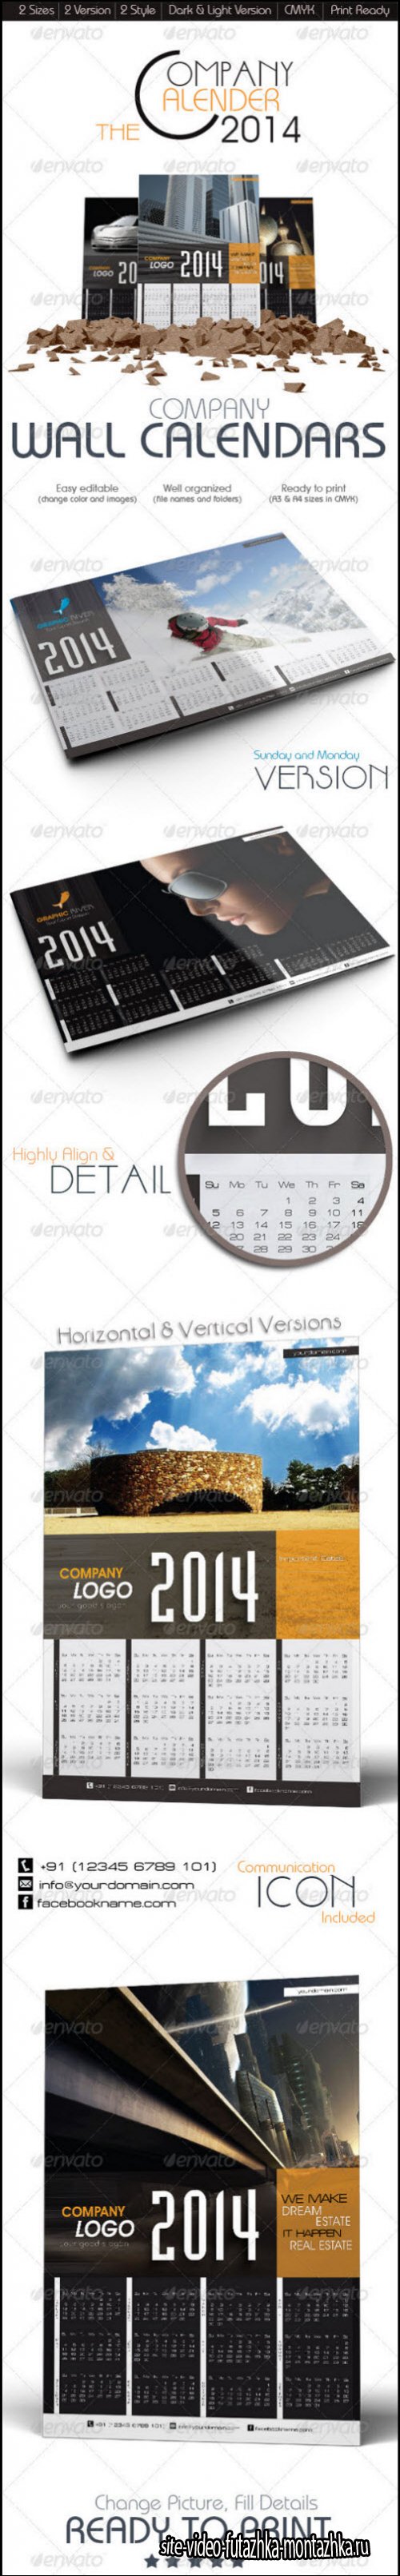 The Company Wall Calendars